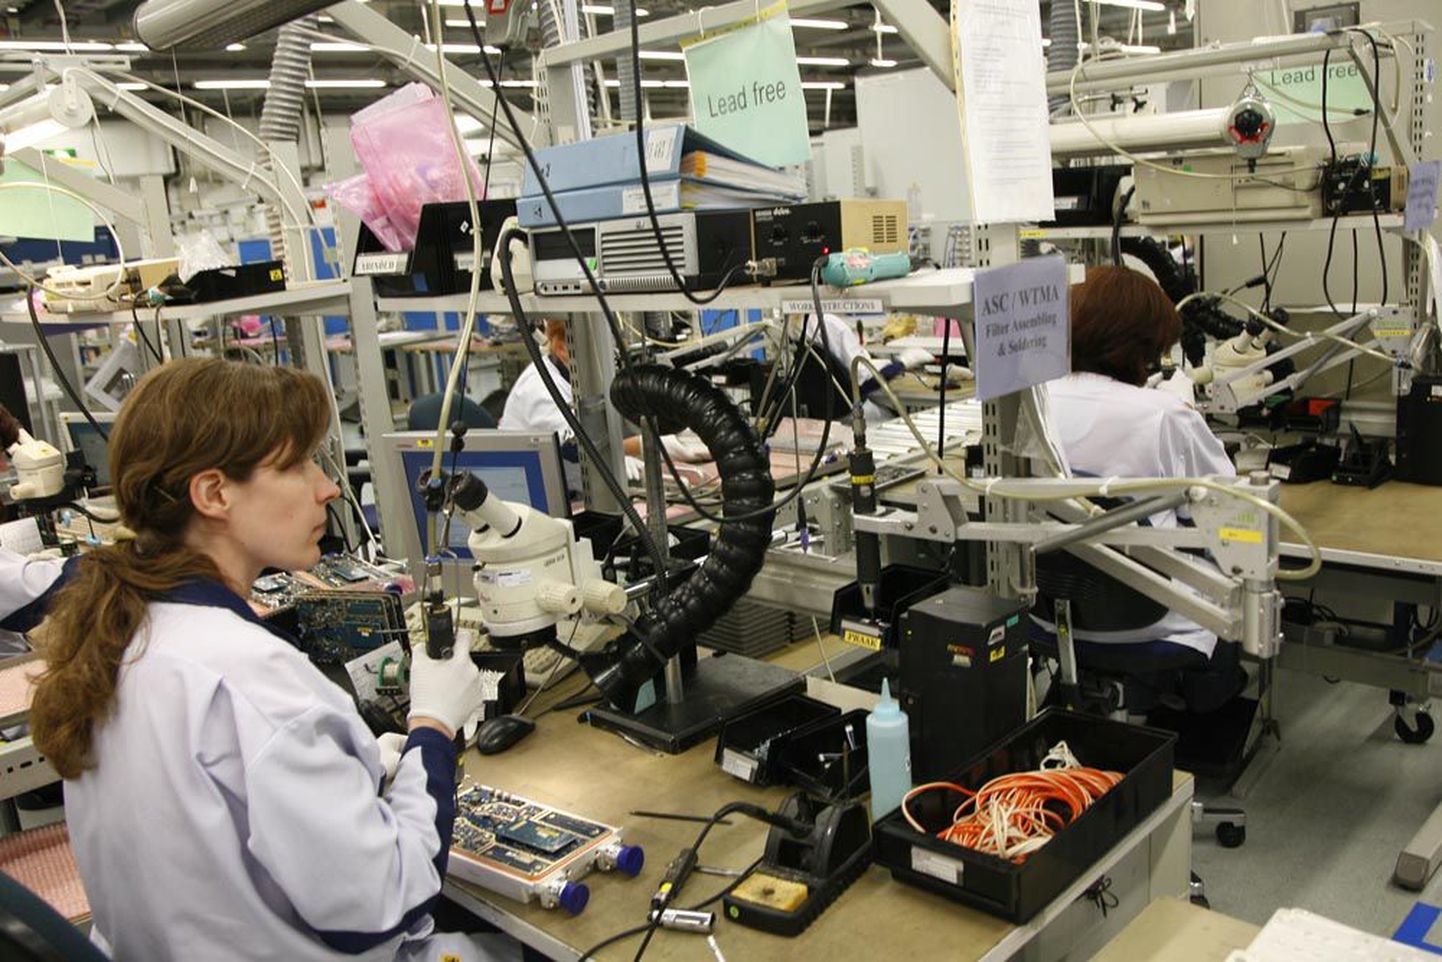 Eelmisel aastal avas Ericsson Tallinnas oma tehase, kus keskendutakse kõrgtehnoloogiliste seadmete tootmisele. Kogu tehase toodang eksporditakse.